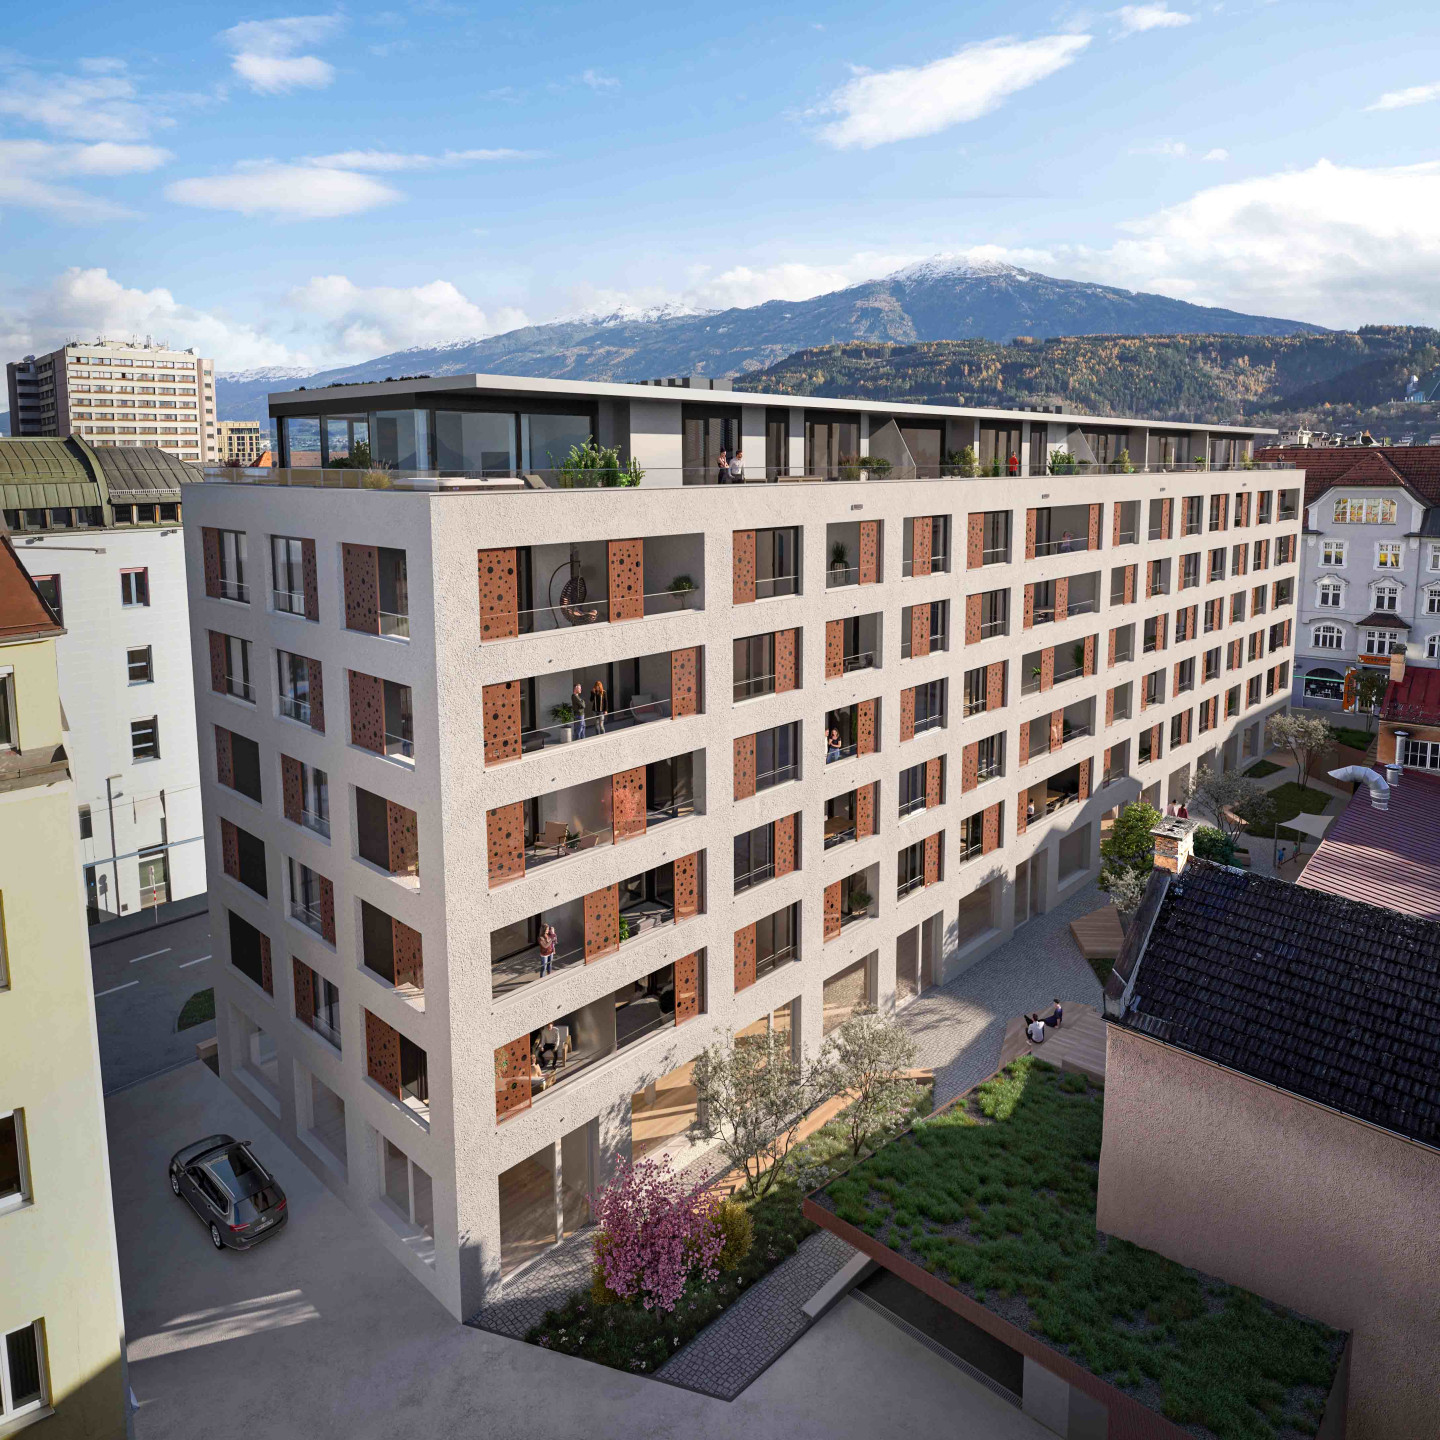 Foto: Visualisierung Projekt MIO in Innsbruck von STRABAG Real Estate